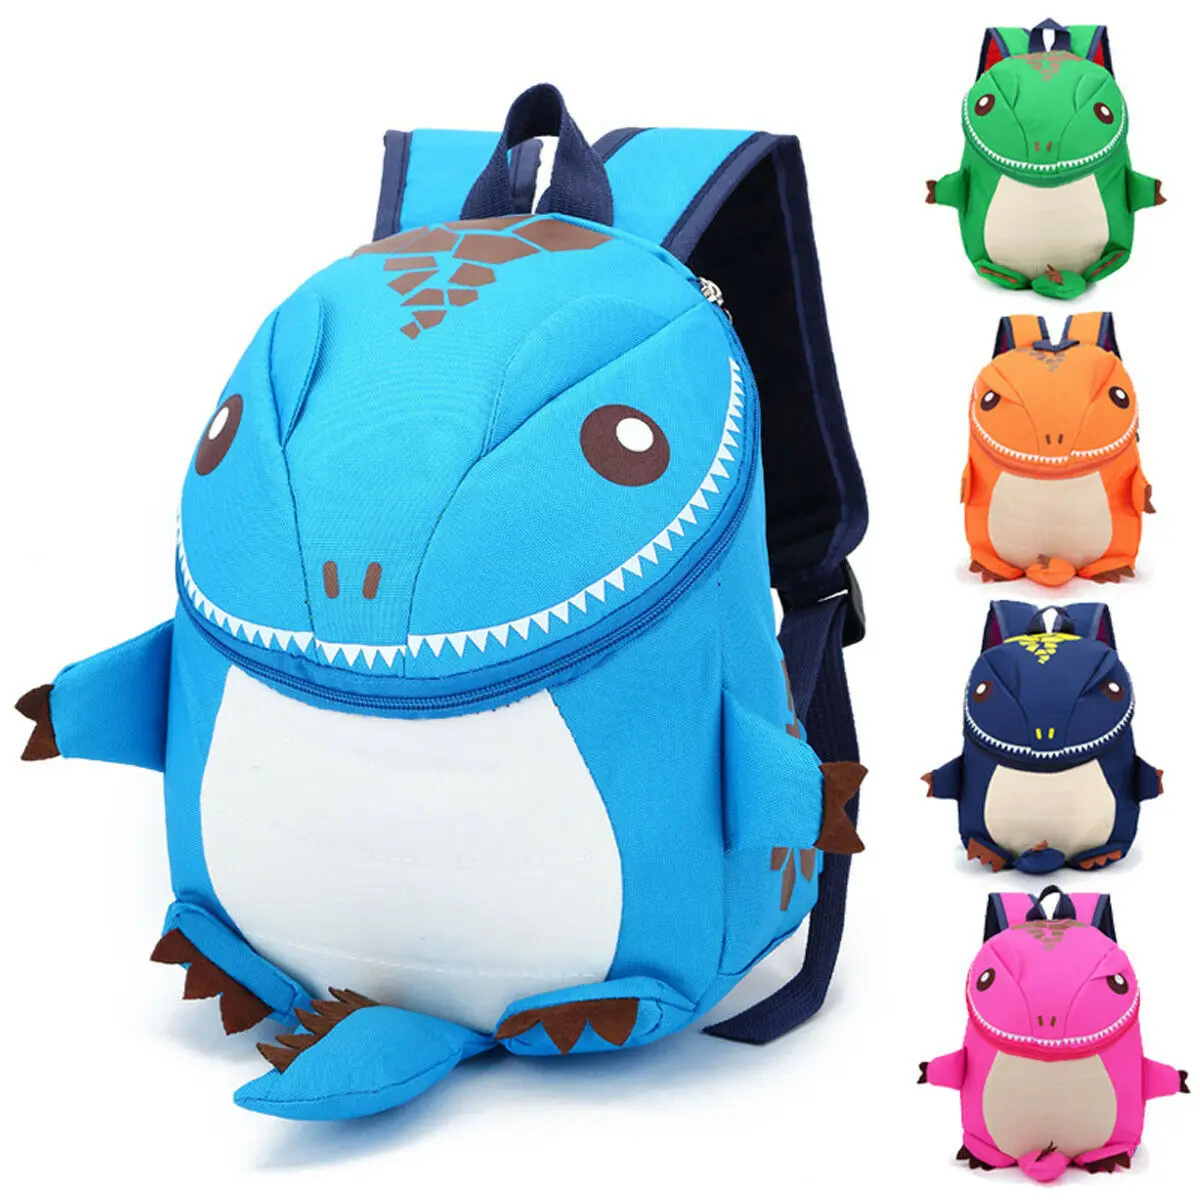 Местный склад 3D Динозавр Детская сумка для мальчиков девочек Водонепроницаемые Детские рюкзаки детская сумка животные принты дорожные сумки игрушки подарки